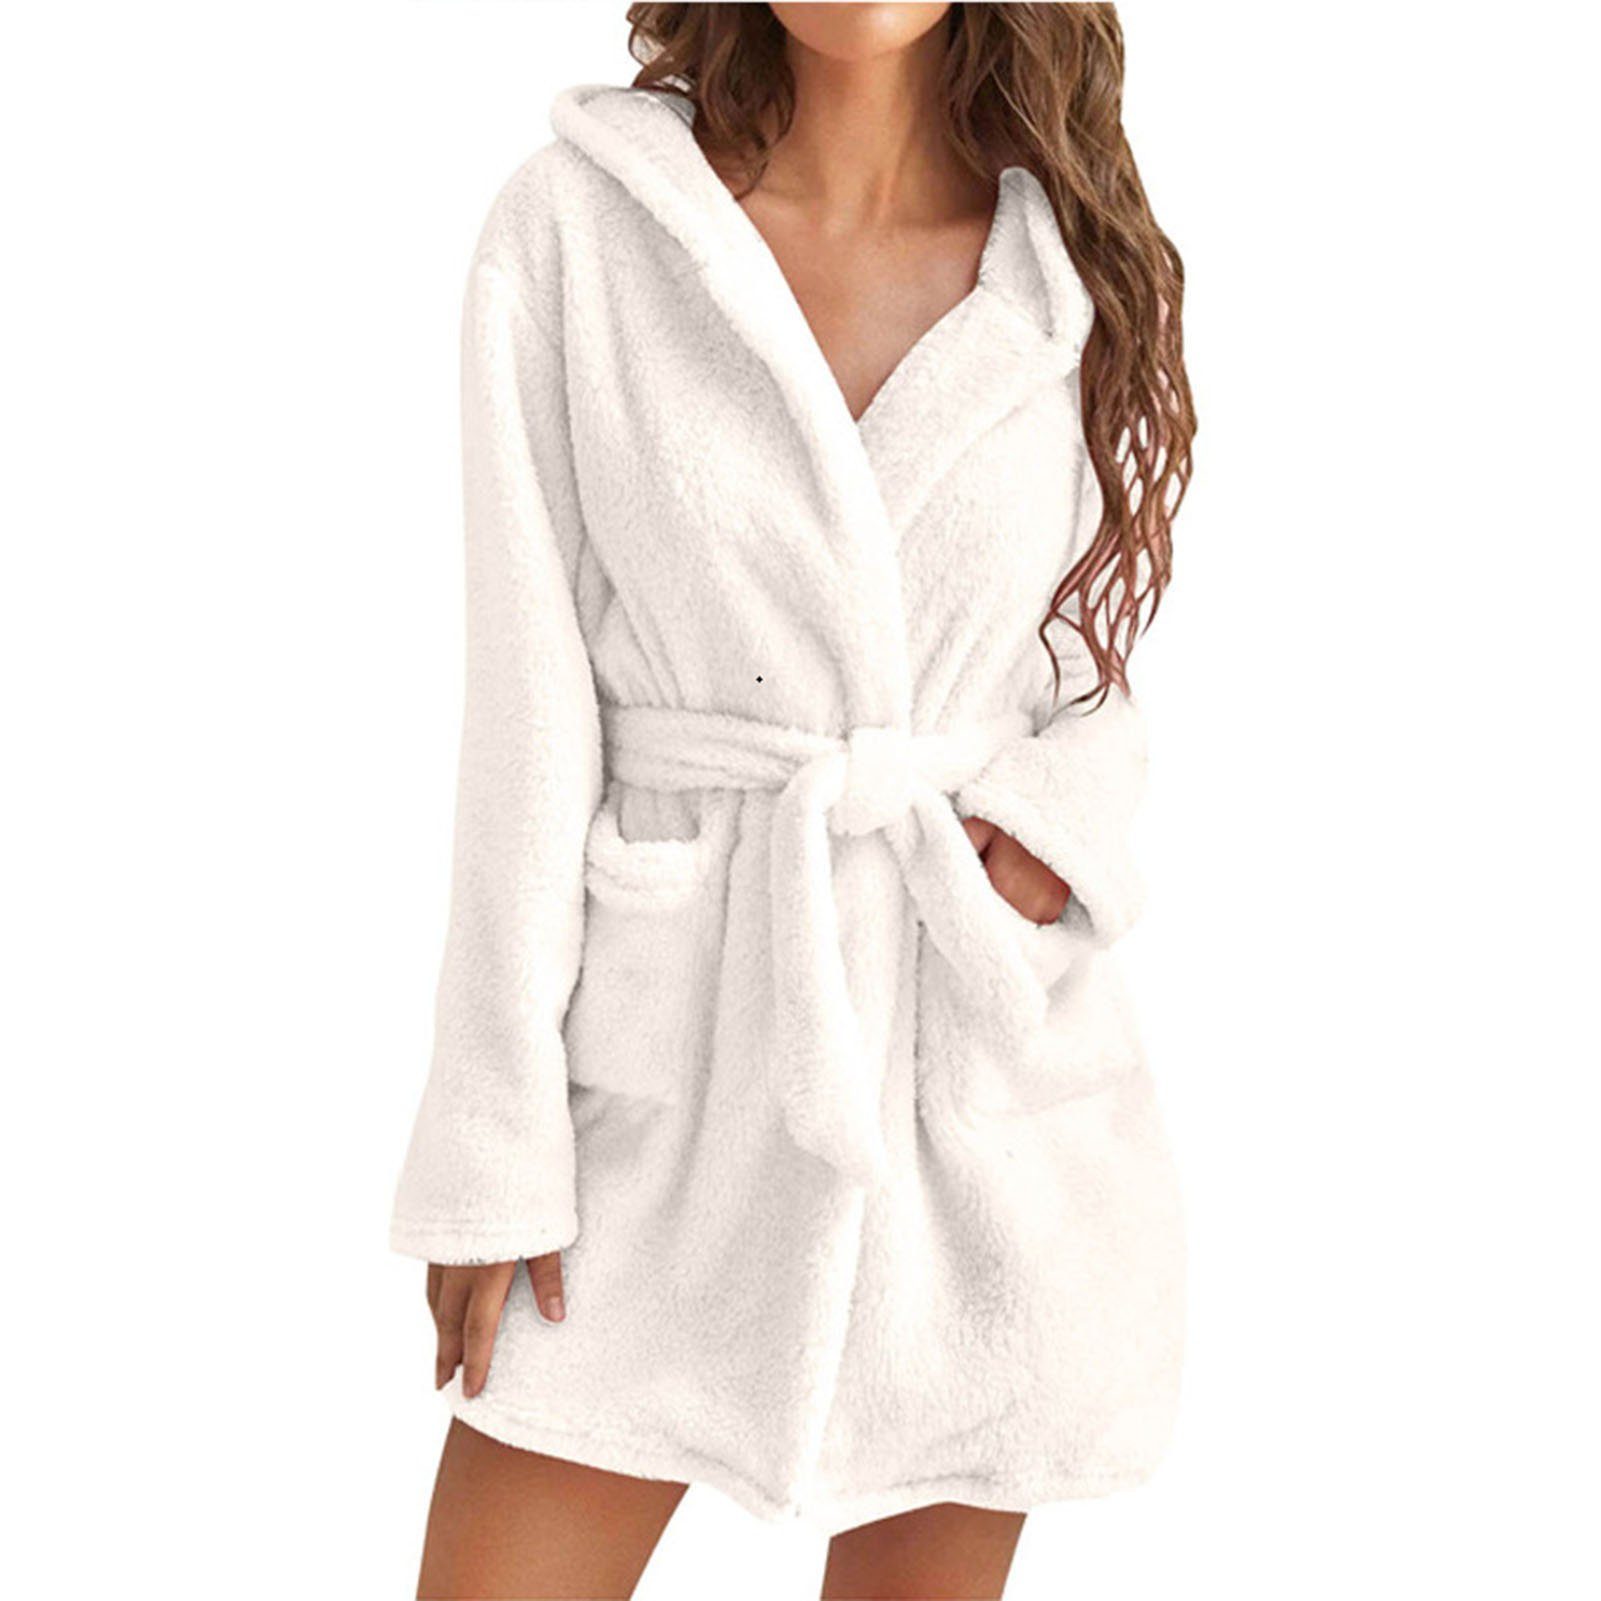 Blusmart Damenbademantel Damen-Handtuch-Bademantel Mit 2 Taschen, Atmungsaktiv, Bequem, Für white